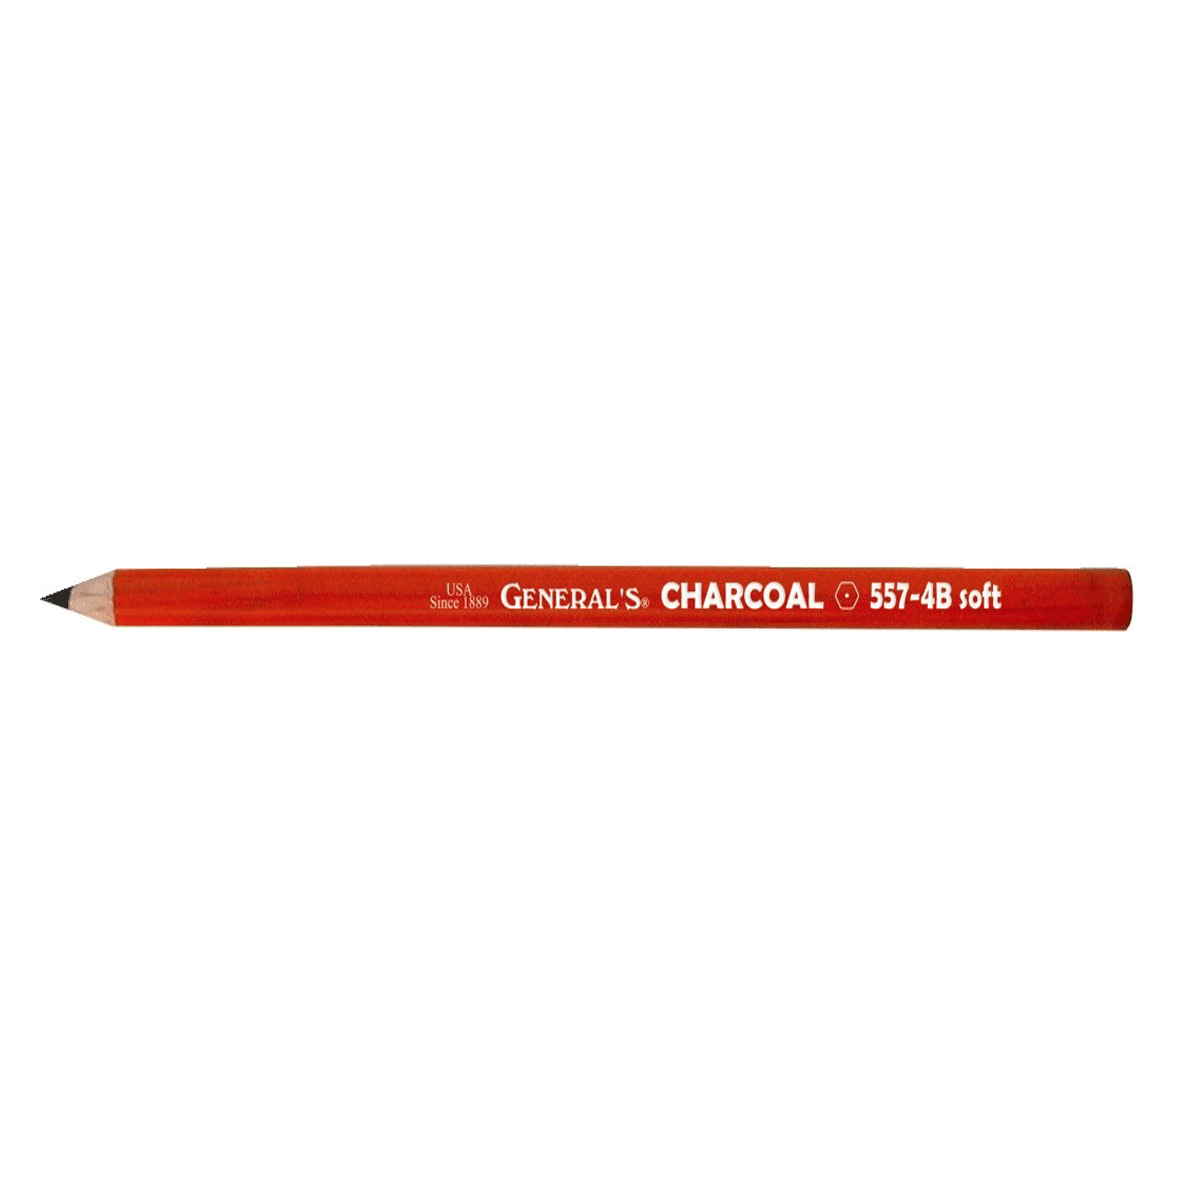 General's Charcoal Pencil - 4B